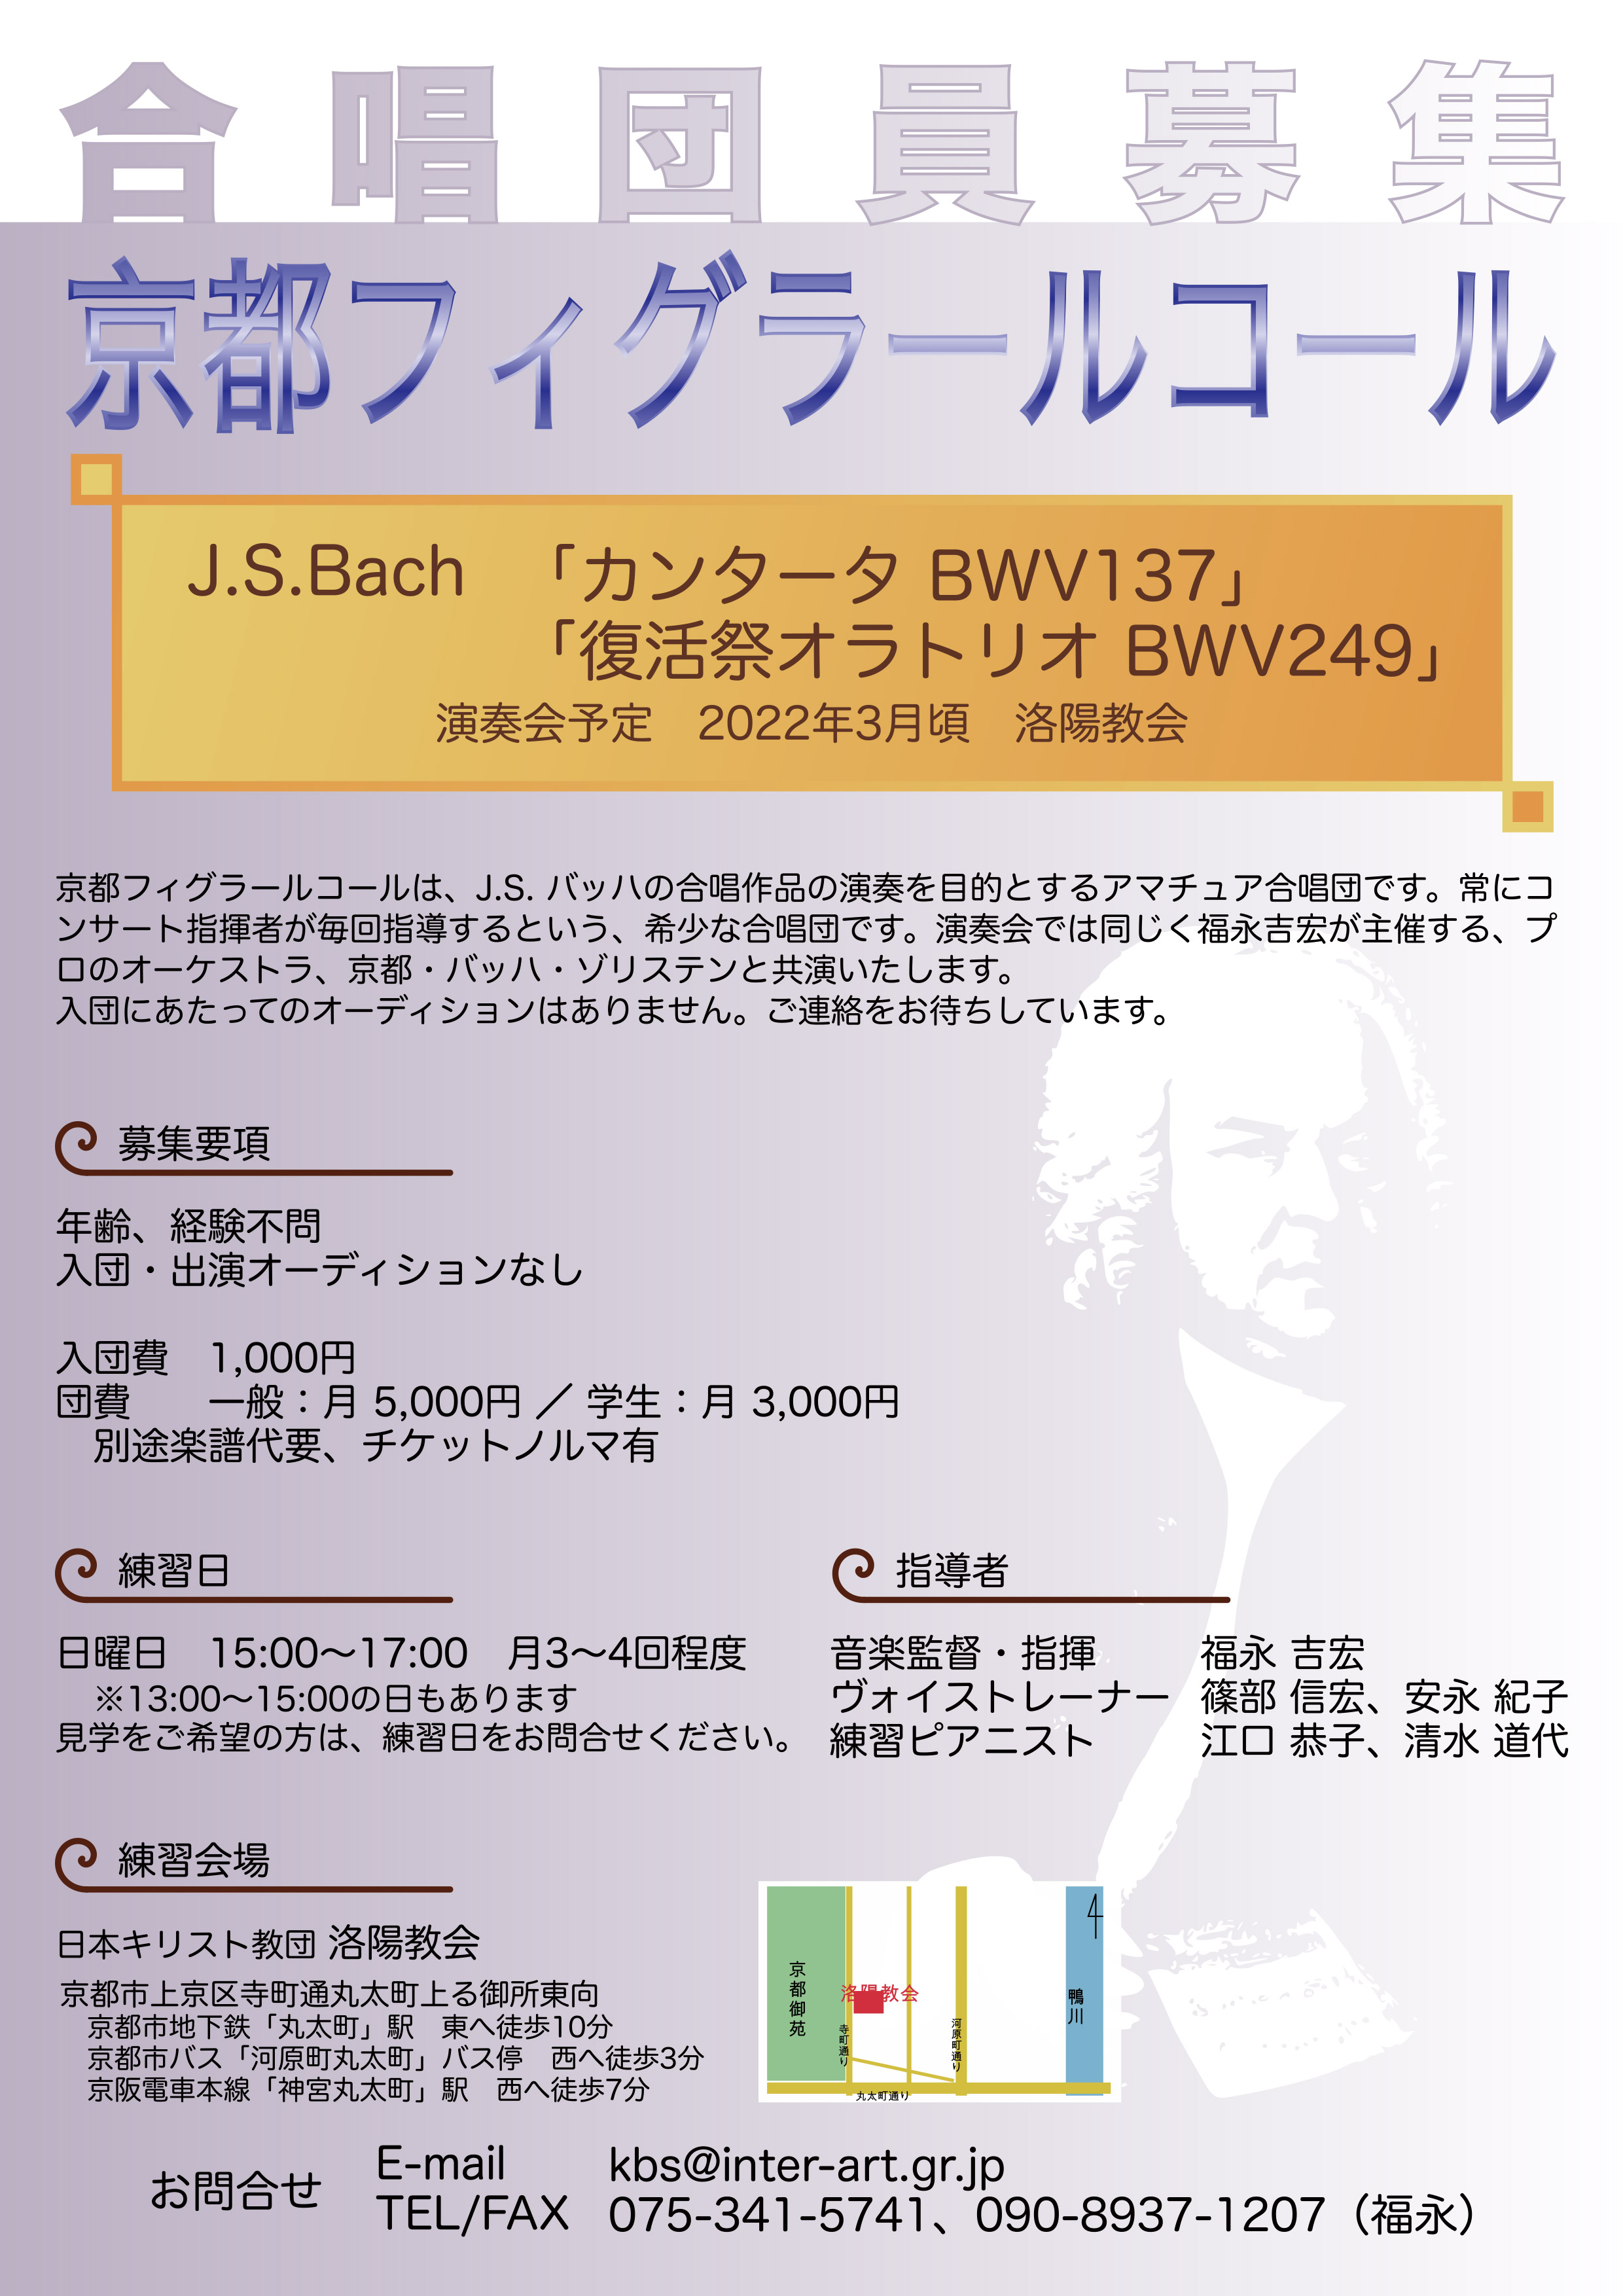 京都フィグラールコール合唱団員募集 京都 バッハ ゾリステン Kyoto Bach Solisten